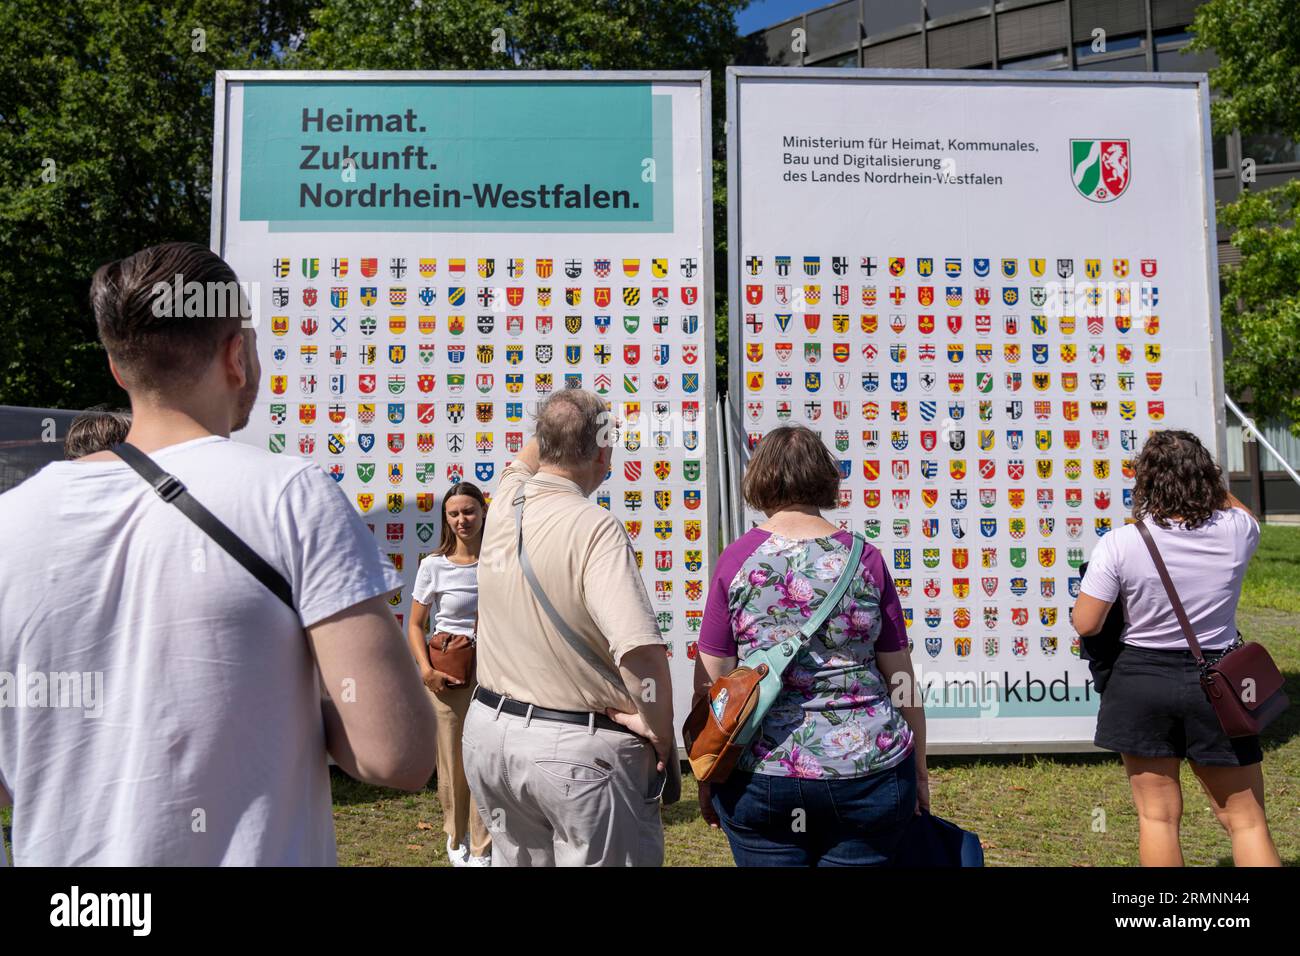 Symbolisches Bild von Haus, Plakatwand mit Wappen aller NRW-Gemeinden, Identifikation mit Haus, am Stand des Innenministeriums A Stockfoto